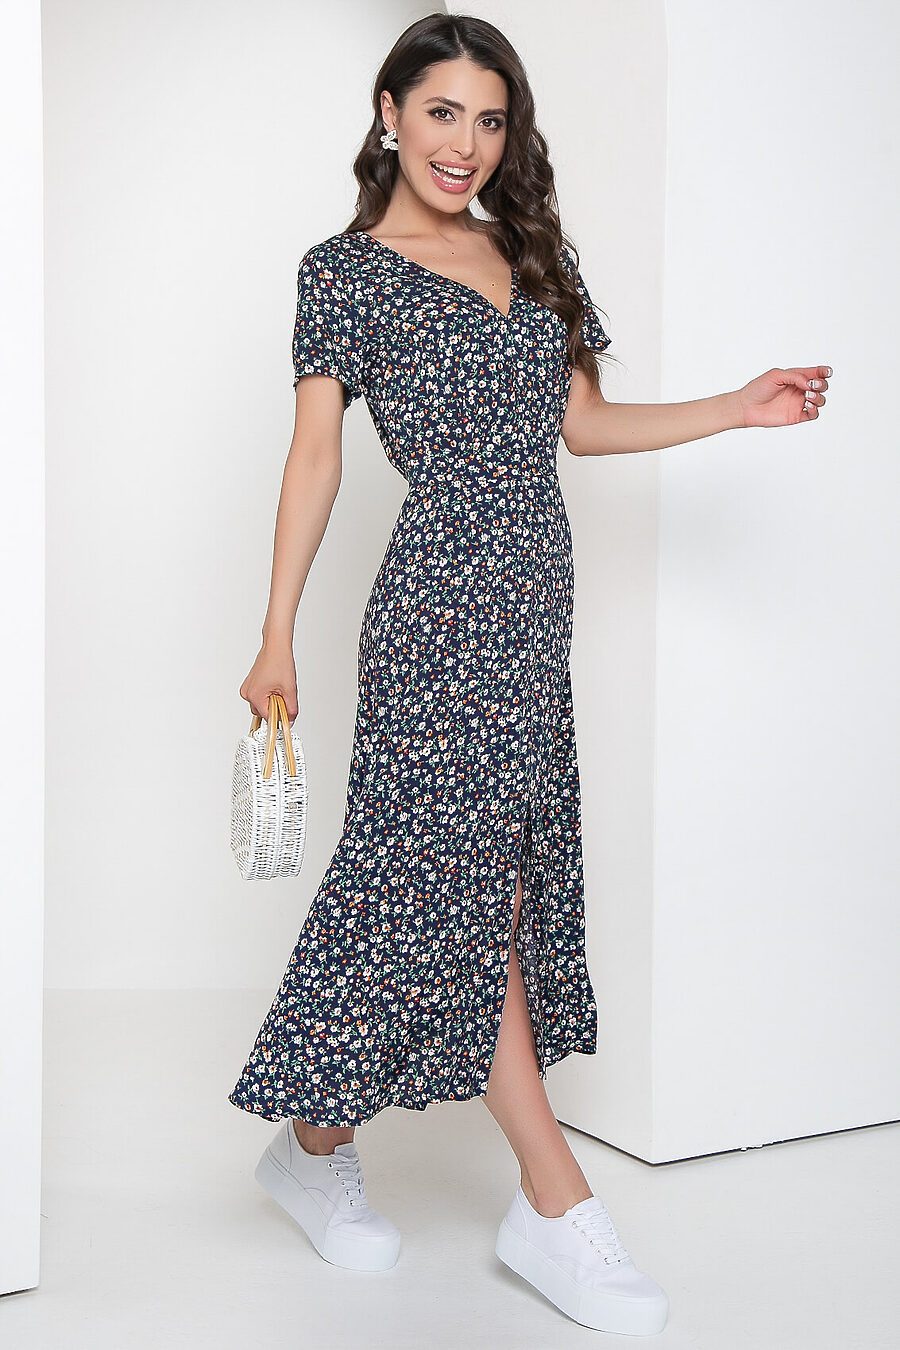 Платье LADY TAIGA (775206), купить в Moyo.moda